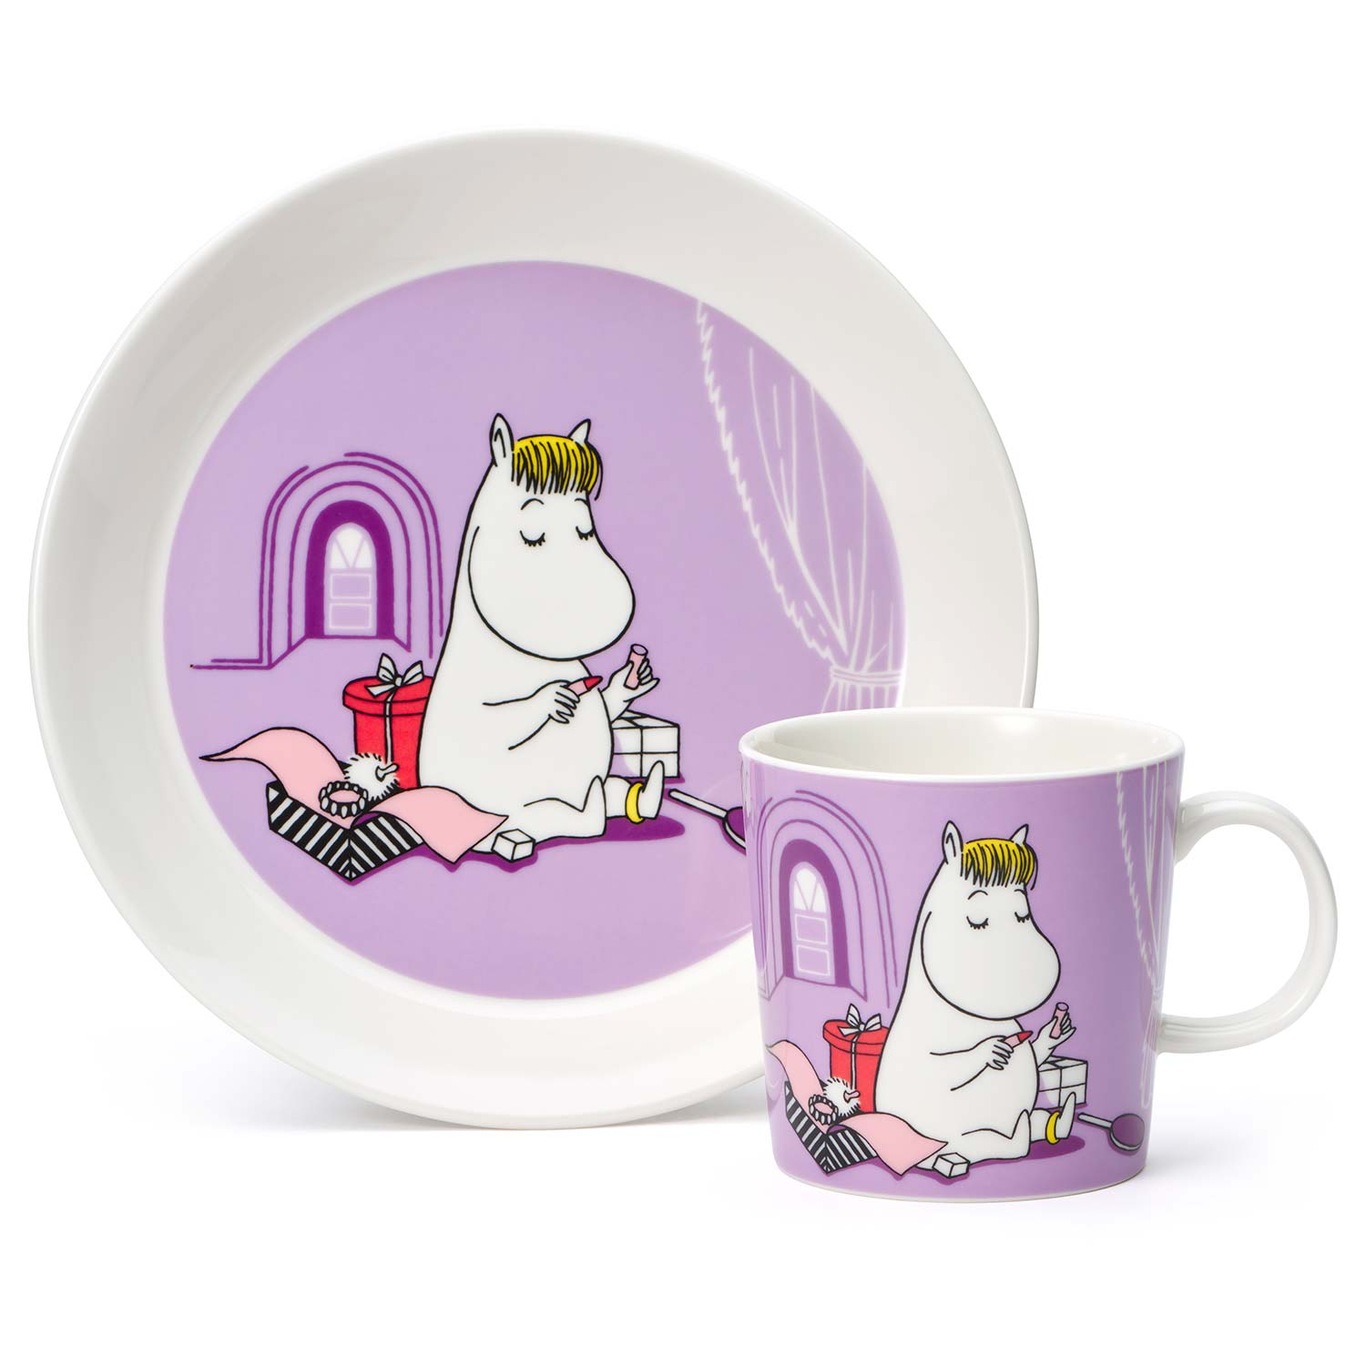 Moomin Mug & Plate, Snorkmaiden Purple